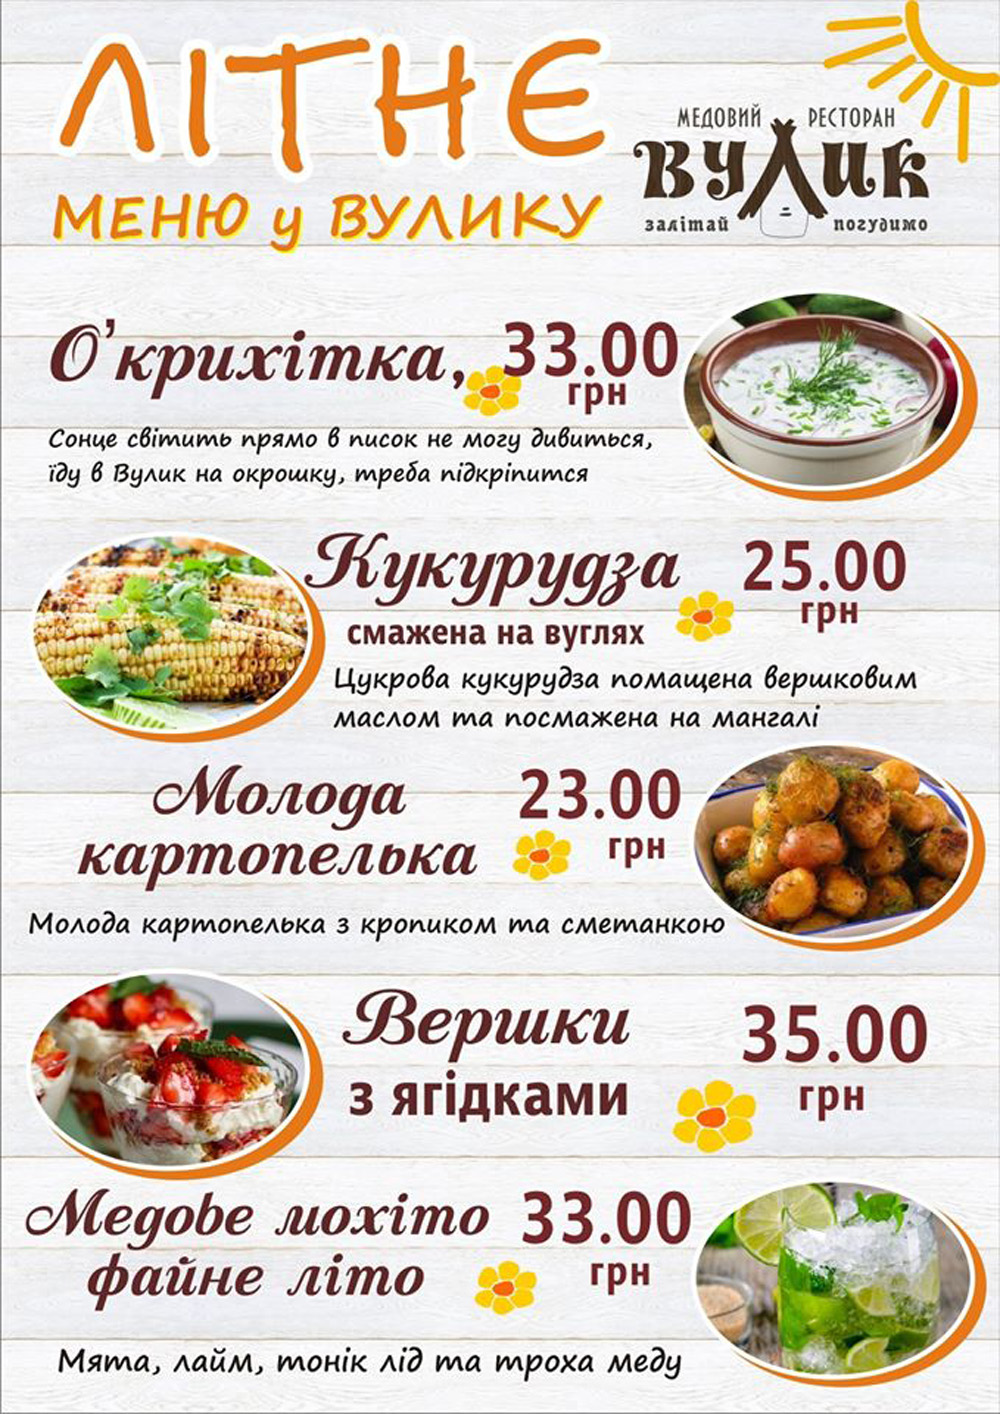 Summer menu at Vulyk